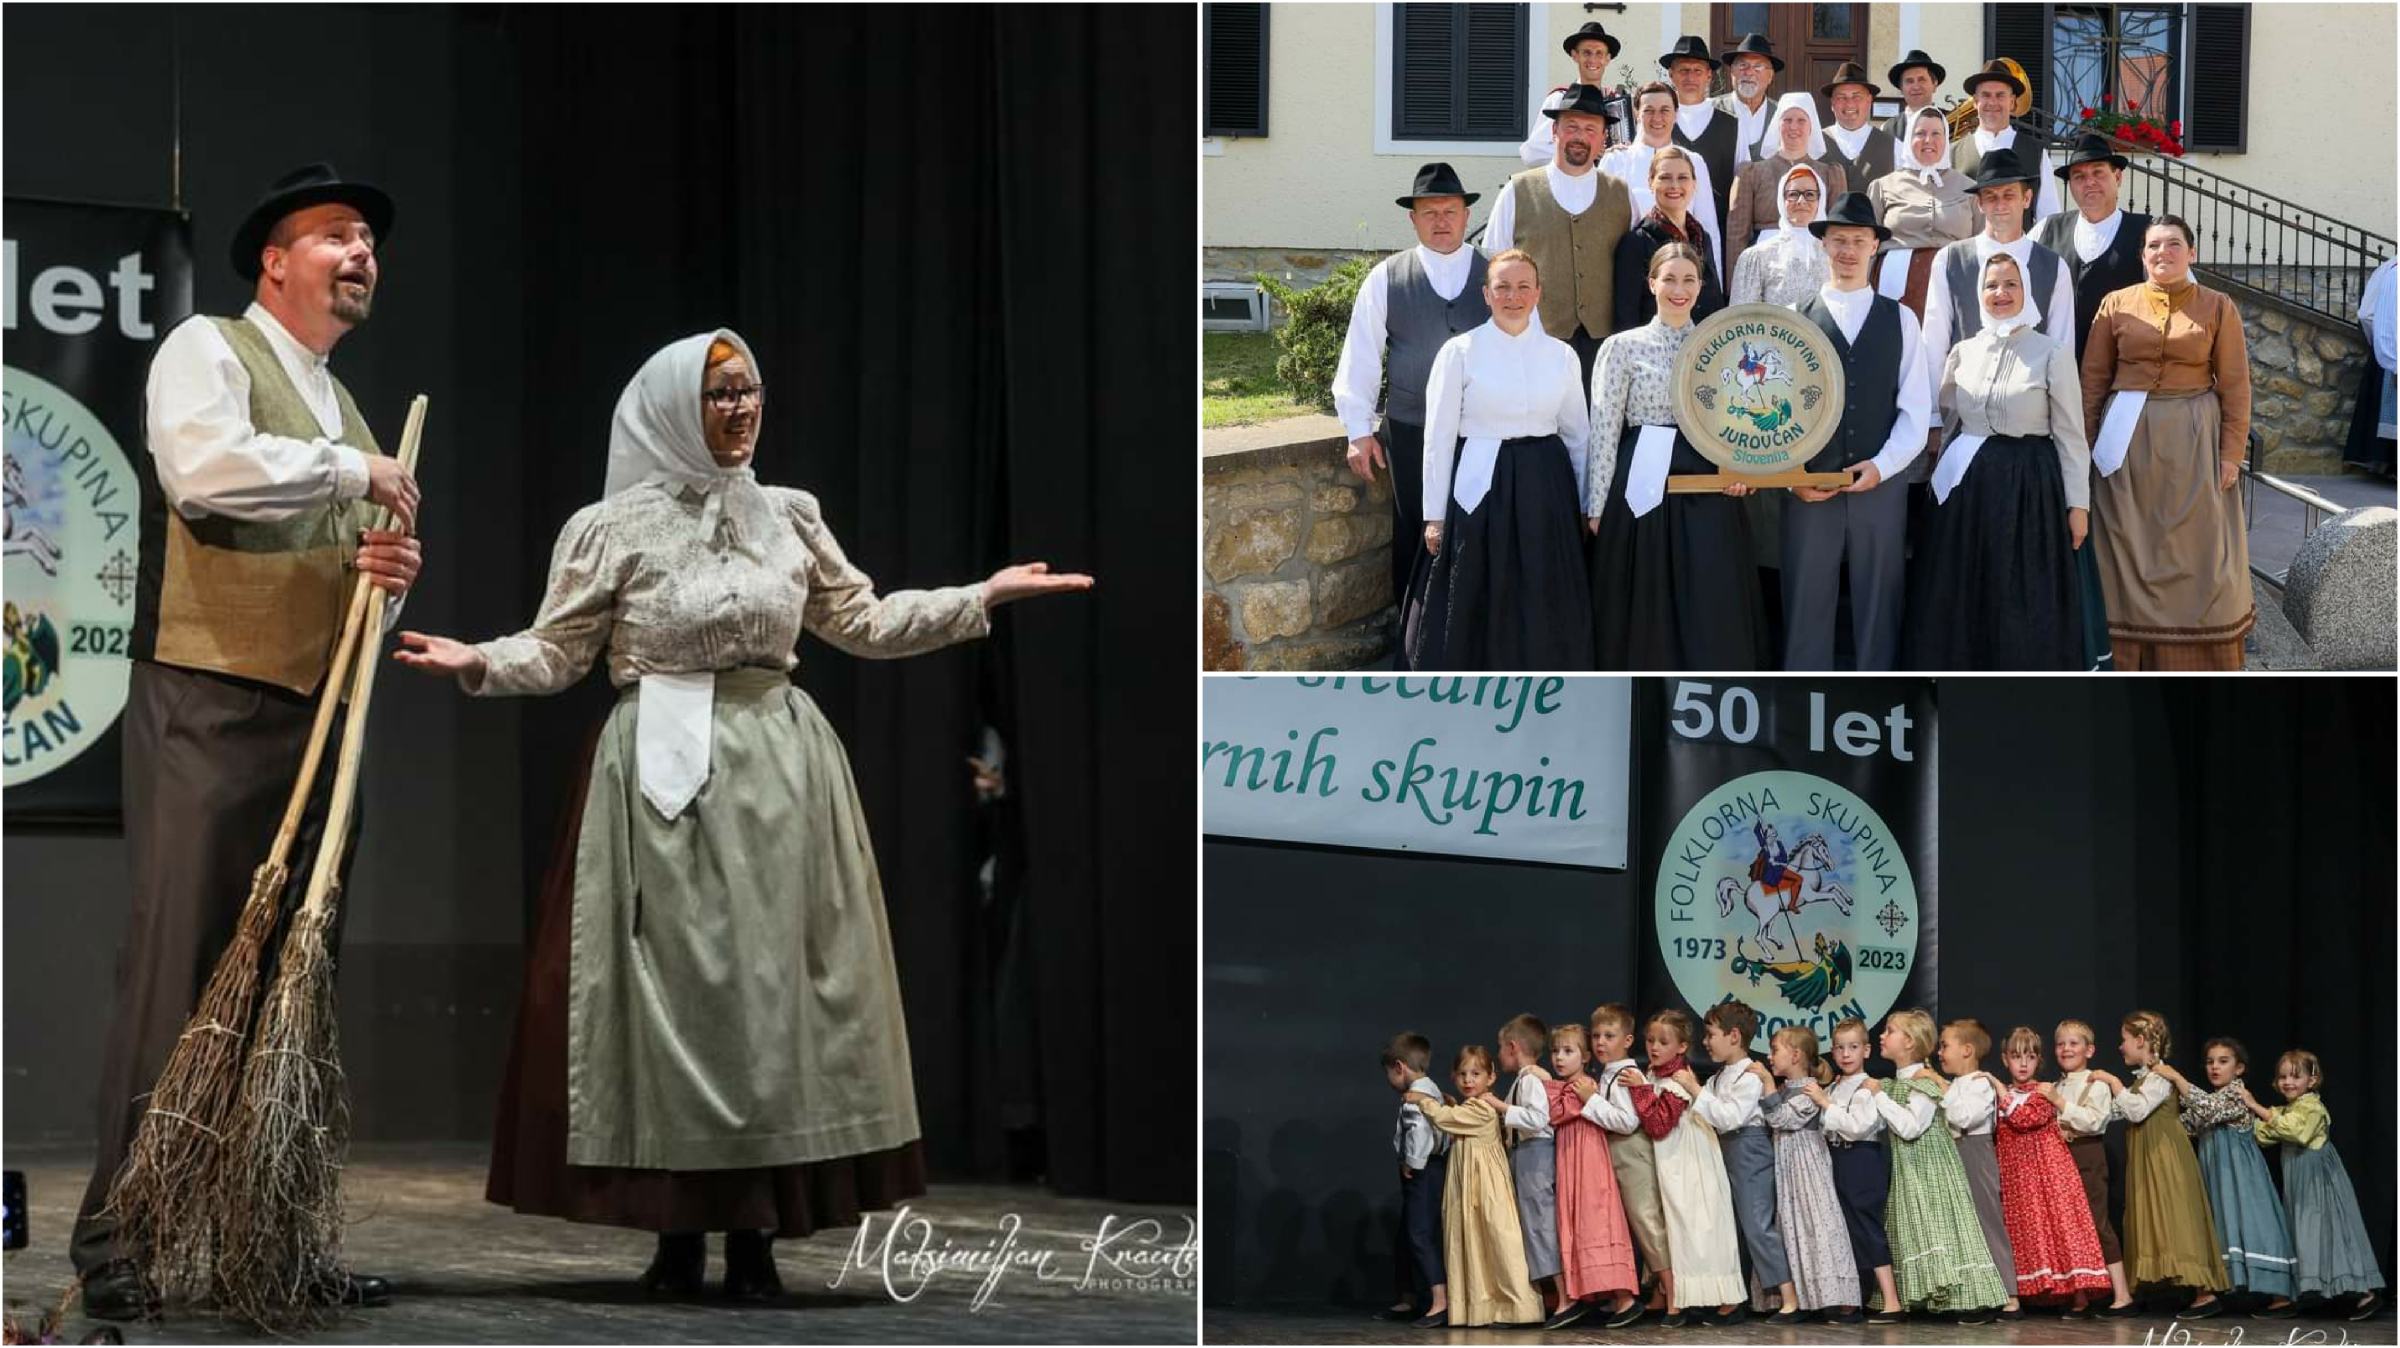 Folklorni dan v Jurovskem Dolu: 50 let odrasle skupine in številčni podmladek v šoli